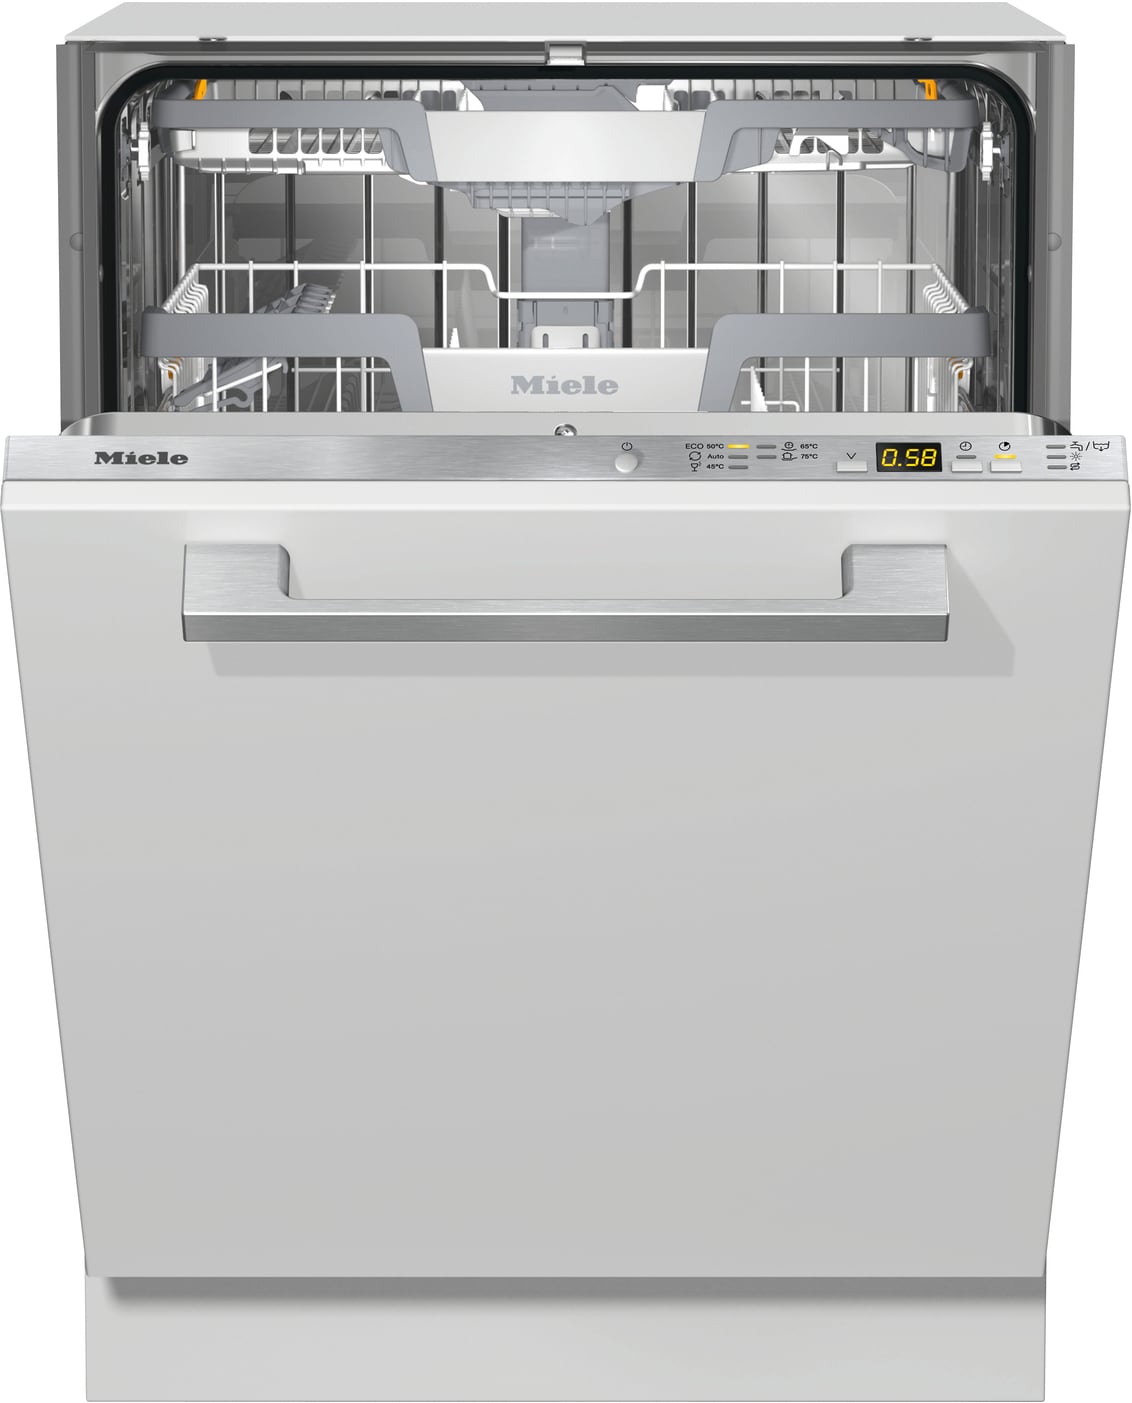 Køb Miele Opvaskemaskine online til meget lav pris!